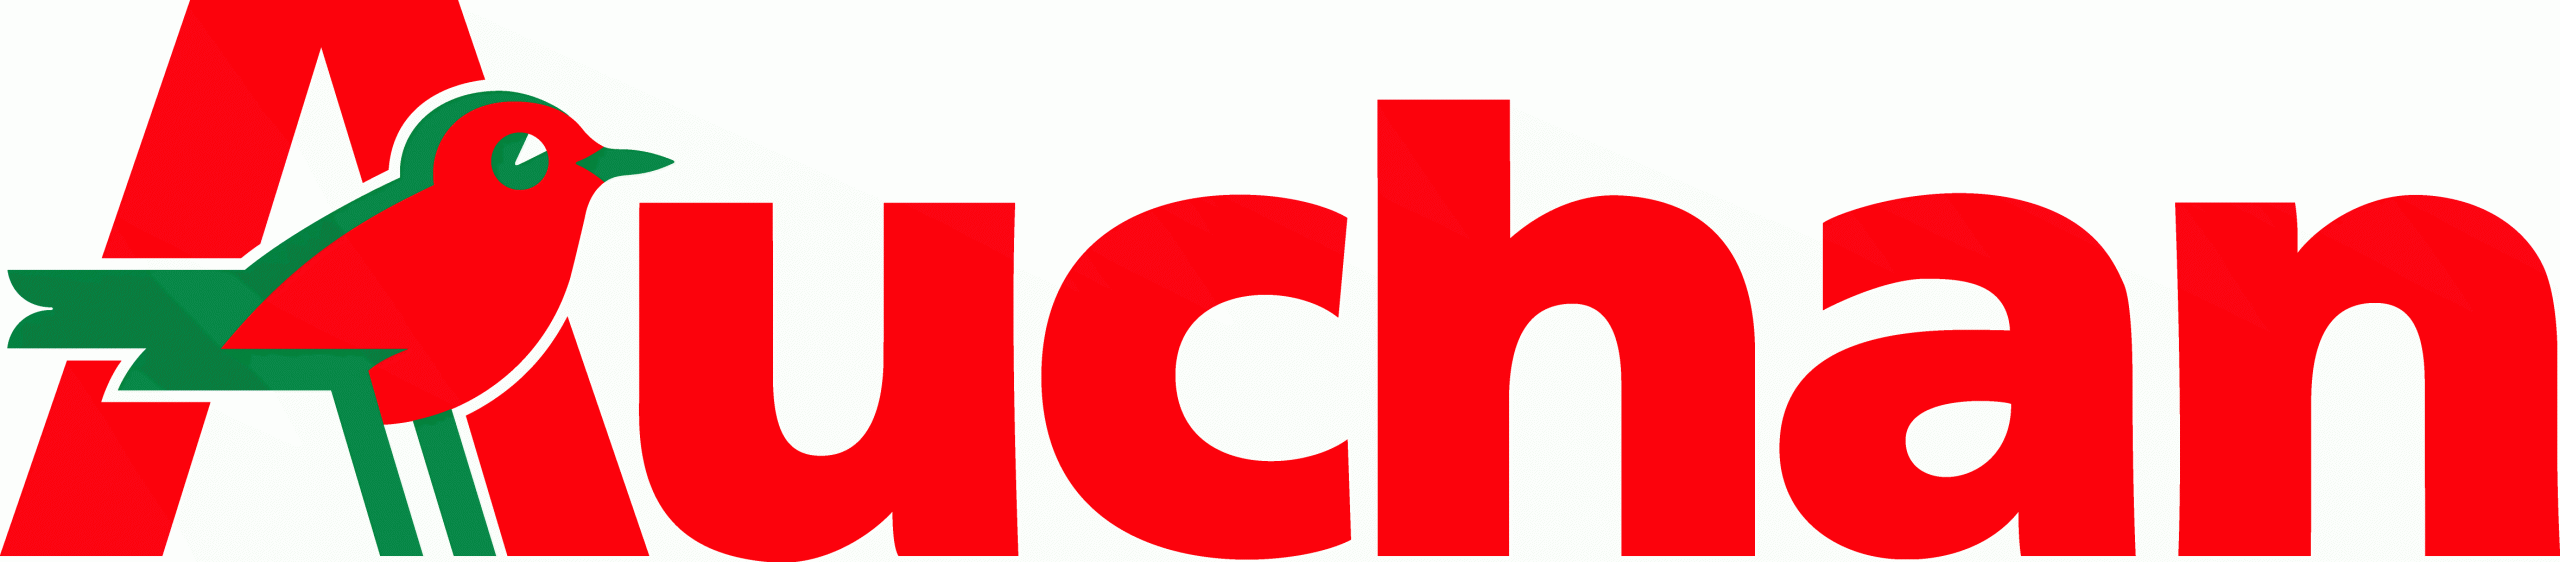 Auchan i Metro sfinalizowały transakcję włączenia sieci Real do Auchan